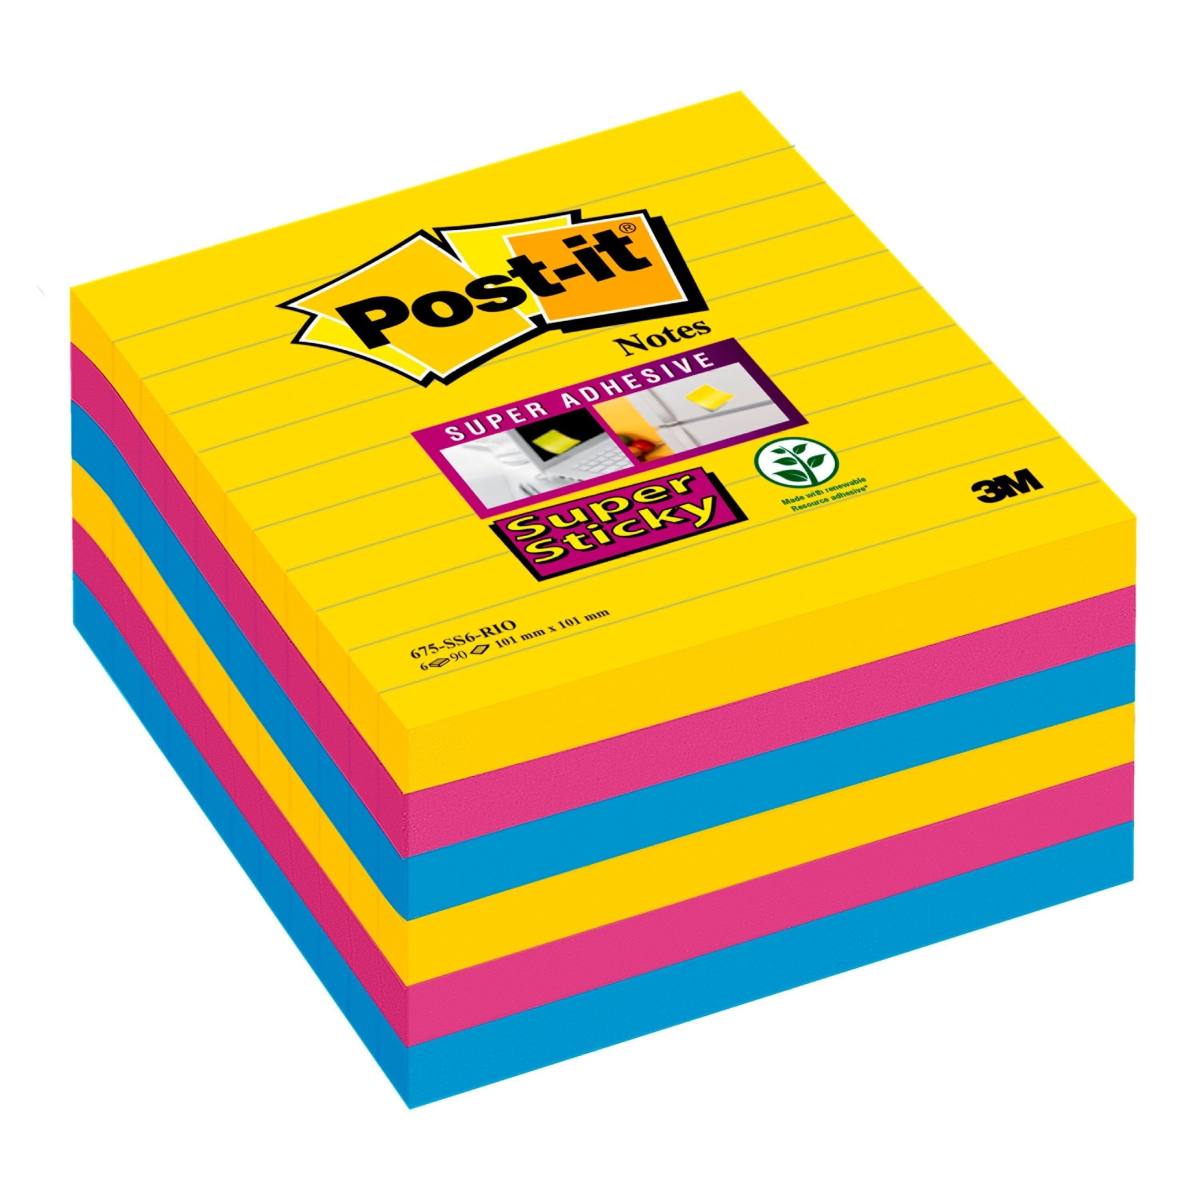 3M Post-it Super Sticky Notes 675-S6R, 6 blokken van 90 vellen, Rio de Janeiro Collectie: ultrageel, -blauw, -roze, 101 mm x 101 mm, gelinieerd, PEFC gecertificeerd